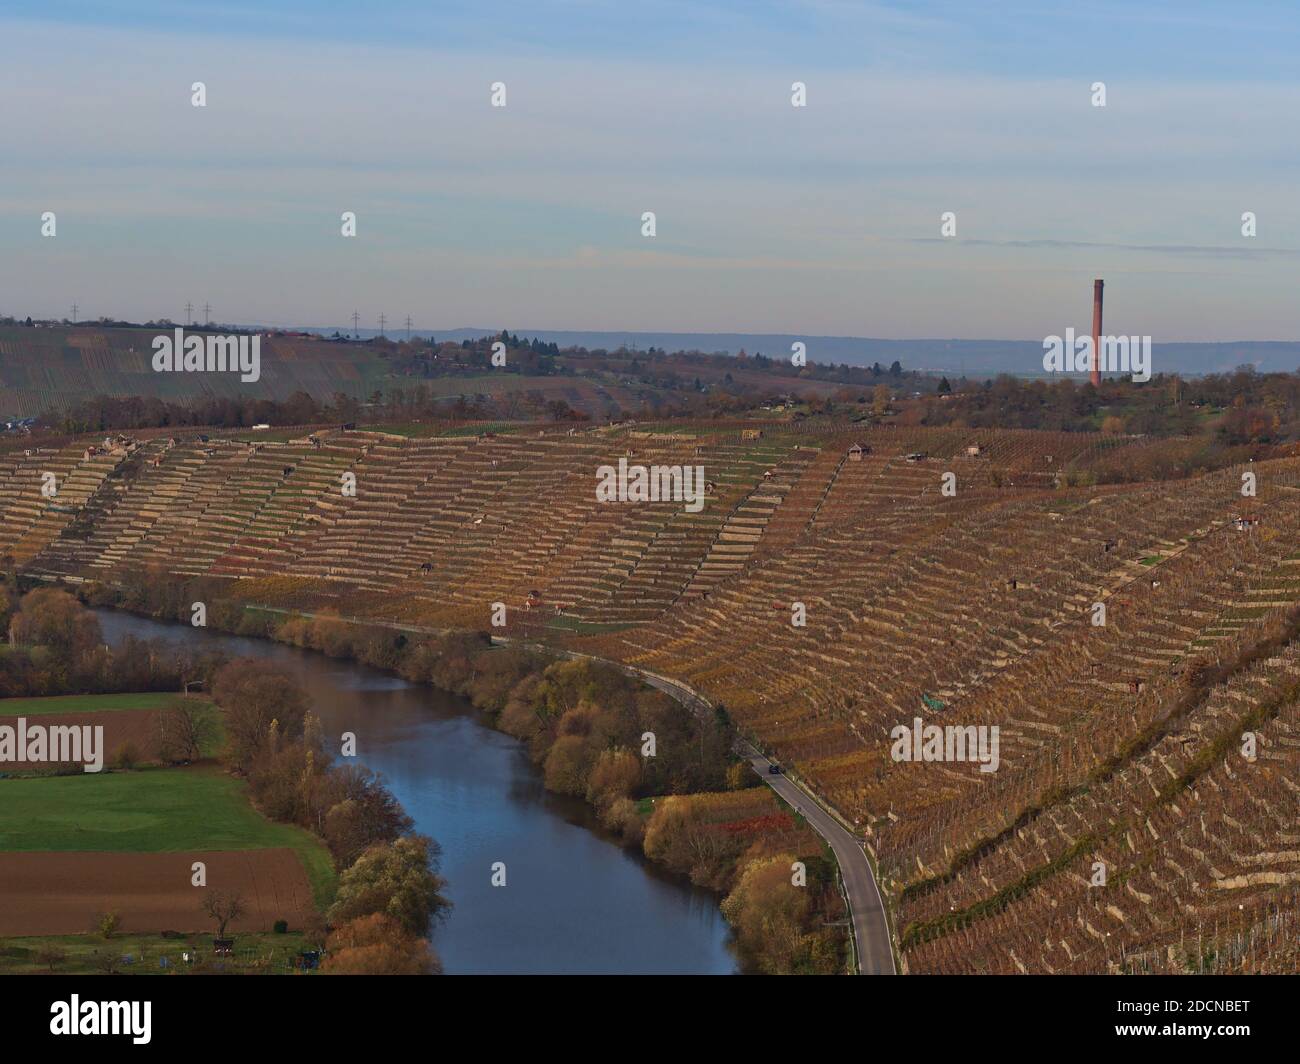 Schöner Blick auf den friedlich fließenden Neckar in einem Tal mit terrassenförmig angelegten Weinbergen am Hang und bunten Bäumen am Flussufer in der Herbstsaison. Stockfoto